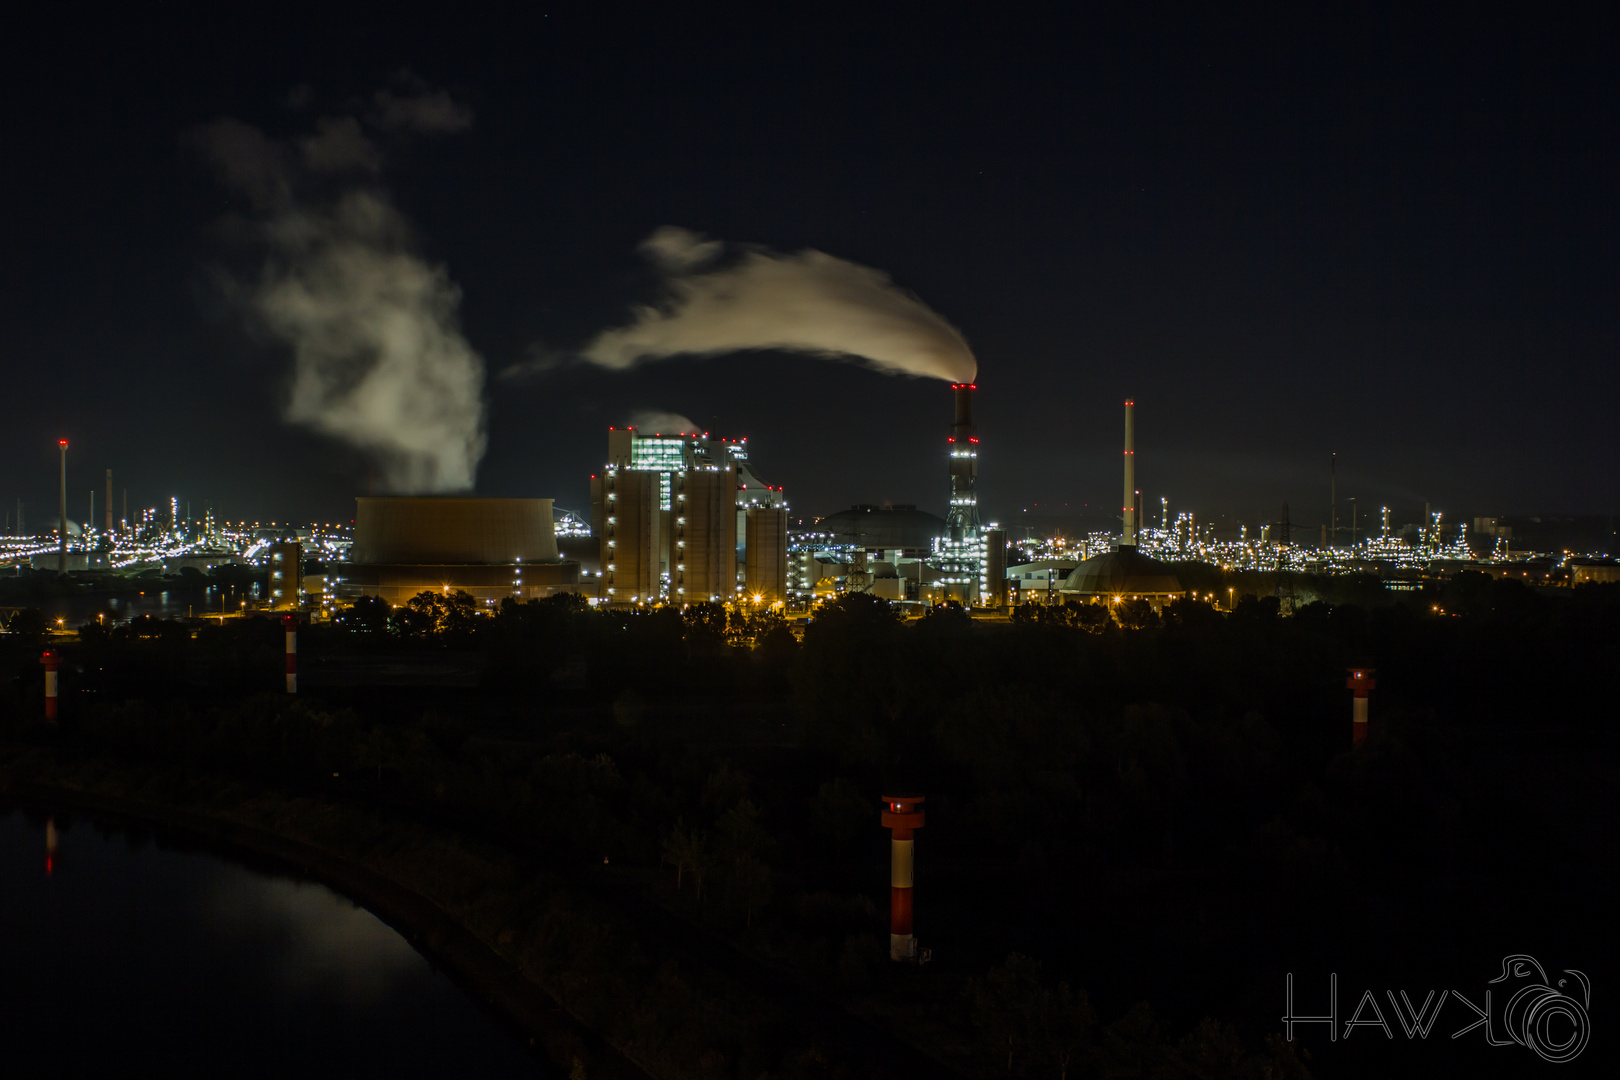 Kohlekraftwerk Moorburg bei Nacht